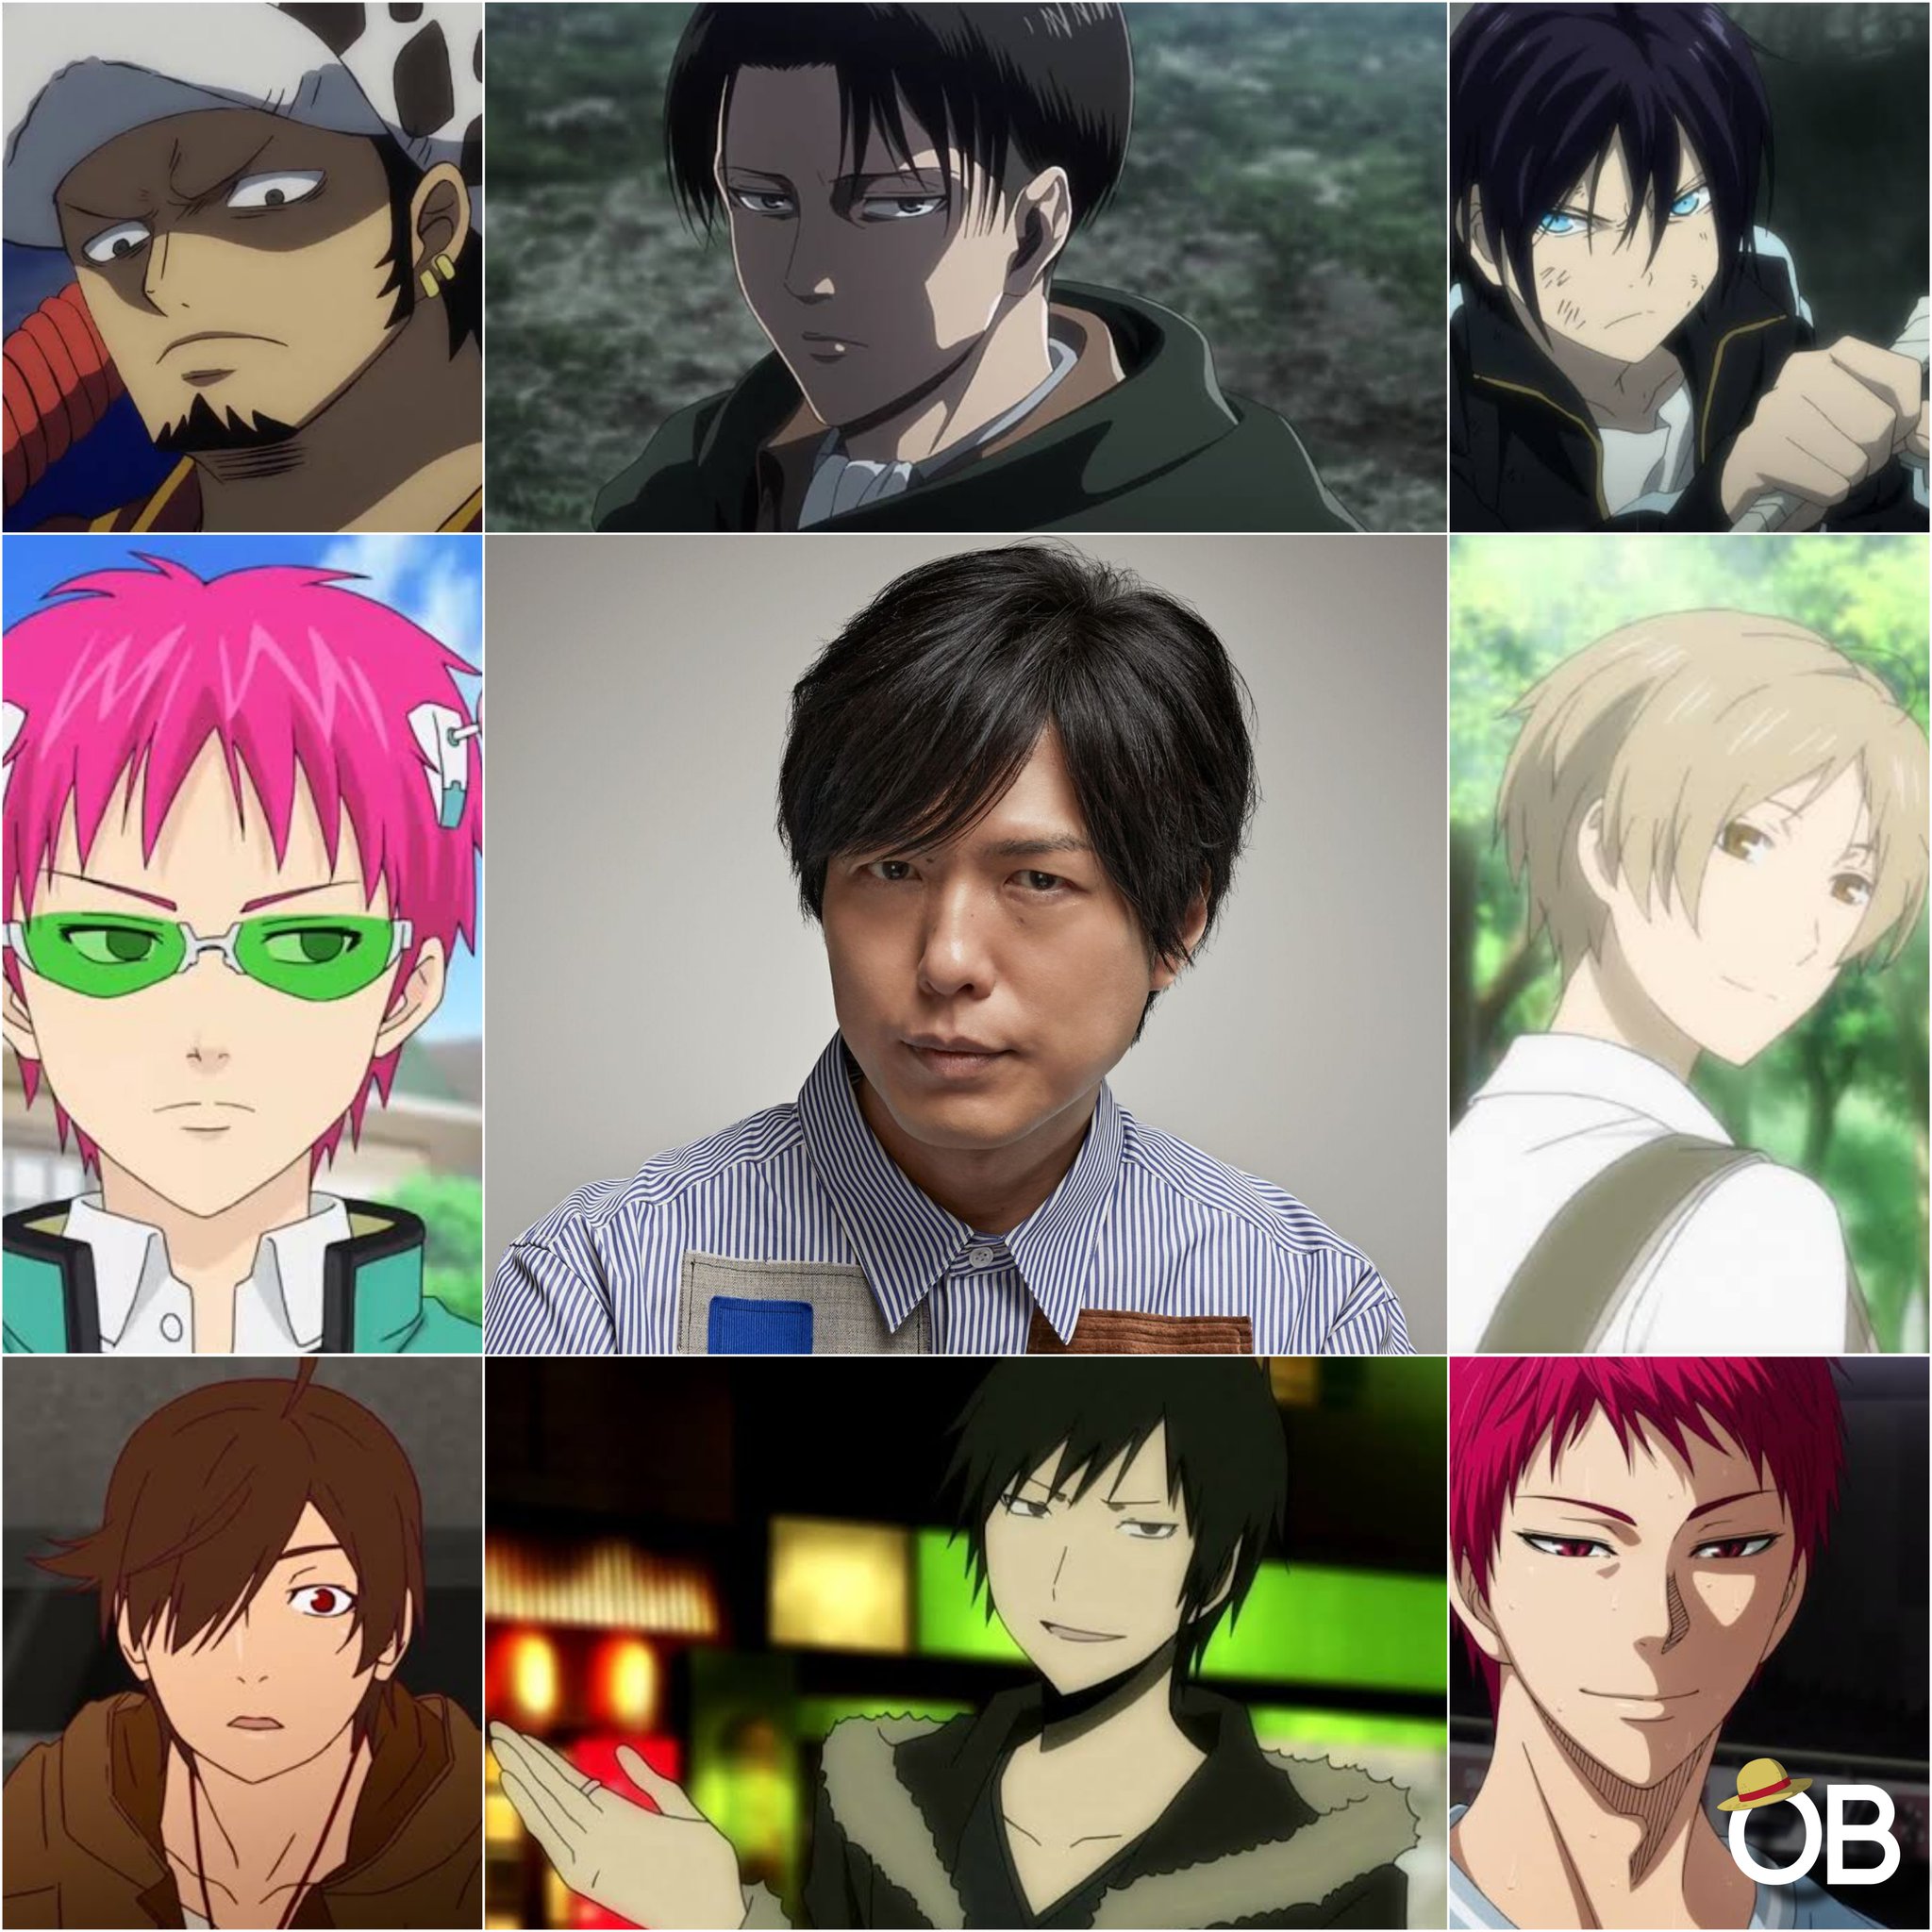 Crunchyroll.pt - (28/01) Um feliz aniversário para o seiyuu Hiroshi Kamiya!  🎉🎉🎉 ⠀⠀⠀⠀⠀⠀⠀⠀⠀ Além dos animes da imagem, o seiyuu também se destaca por  dar voz ao Levi de Attack on Titan 🥰